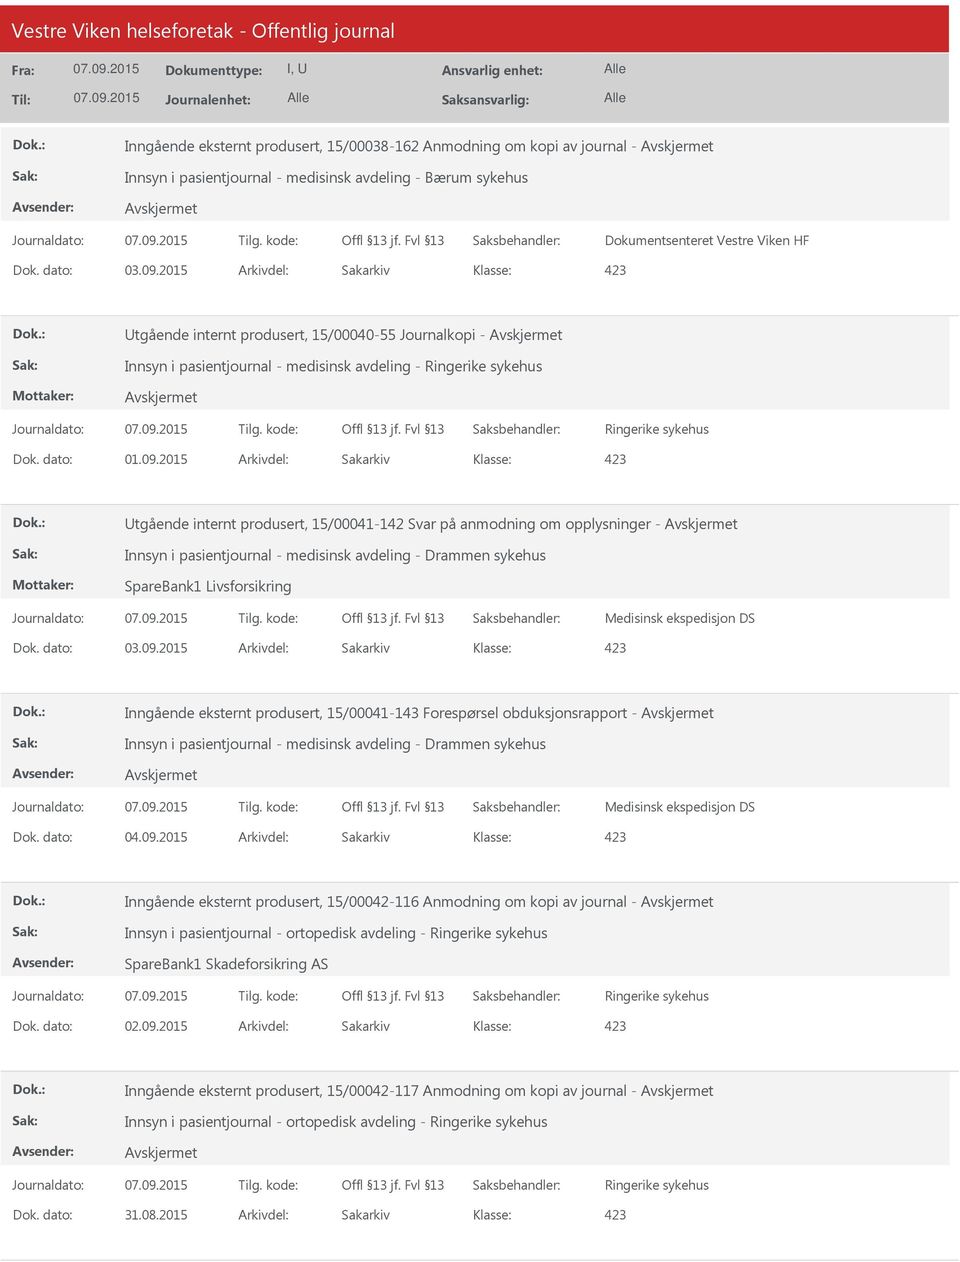 2015 Arkivdel: Sakarkiv tgående internt produsert, 15/00041-142 Svar på anmodning om opplysninger - Innsyn i pasientjournal - medisinsk avdeling - Drammen sykehus SpareBank1 Livsforsikring Medisinsk